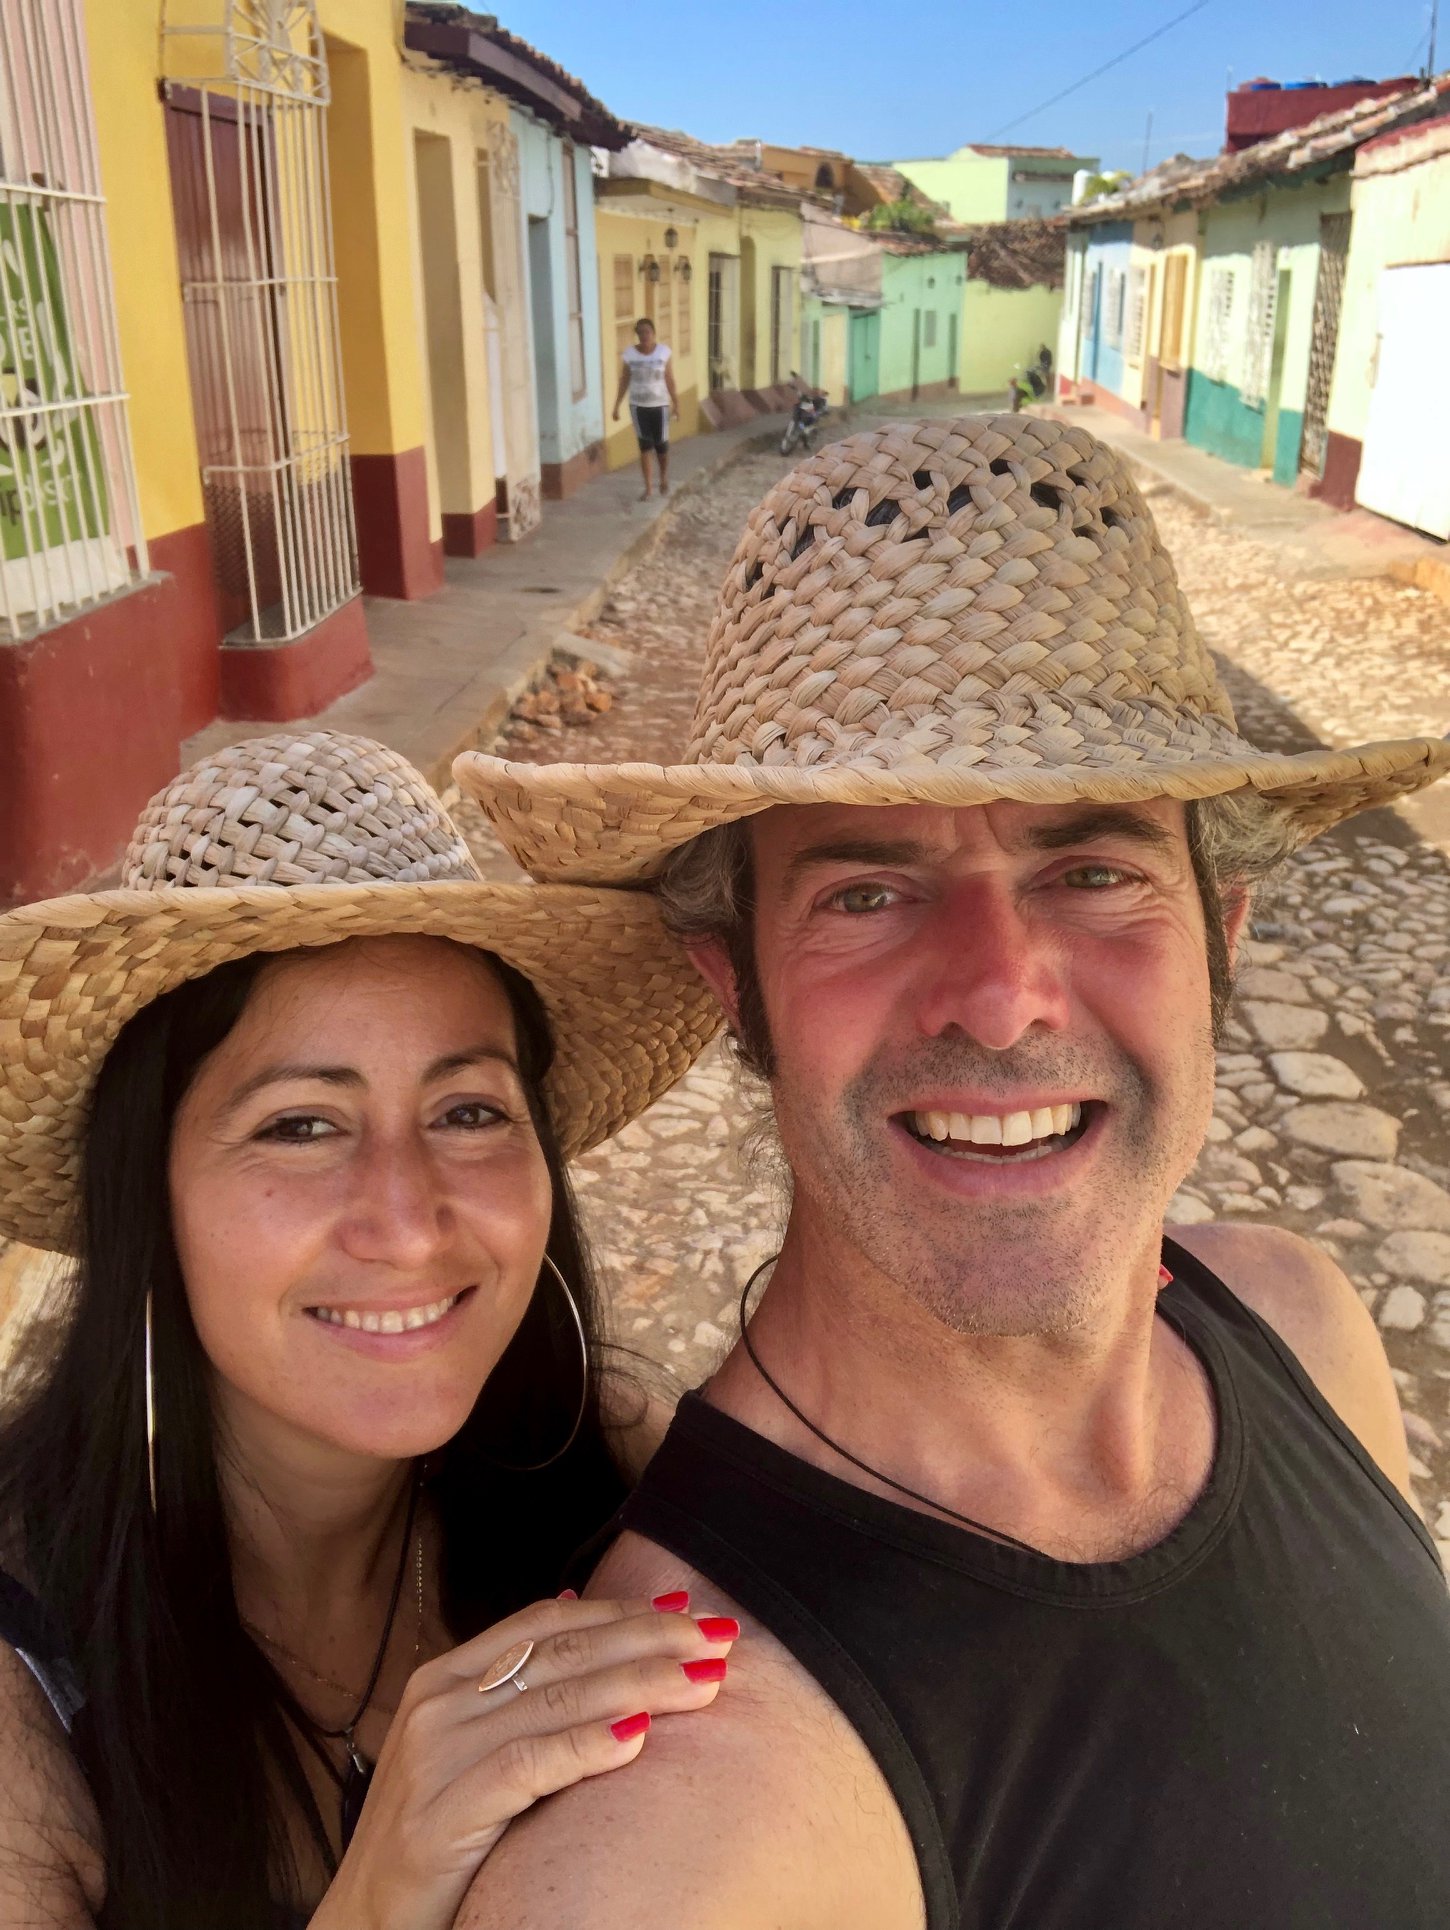 Enjoy travelling adventure in Cuba - explore Havana, Viñales, Trinidad, Santa Clara and Varadero in with Corazon Cuba